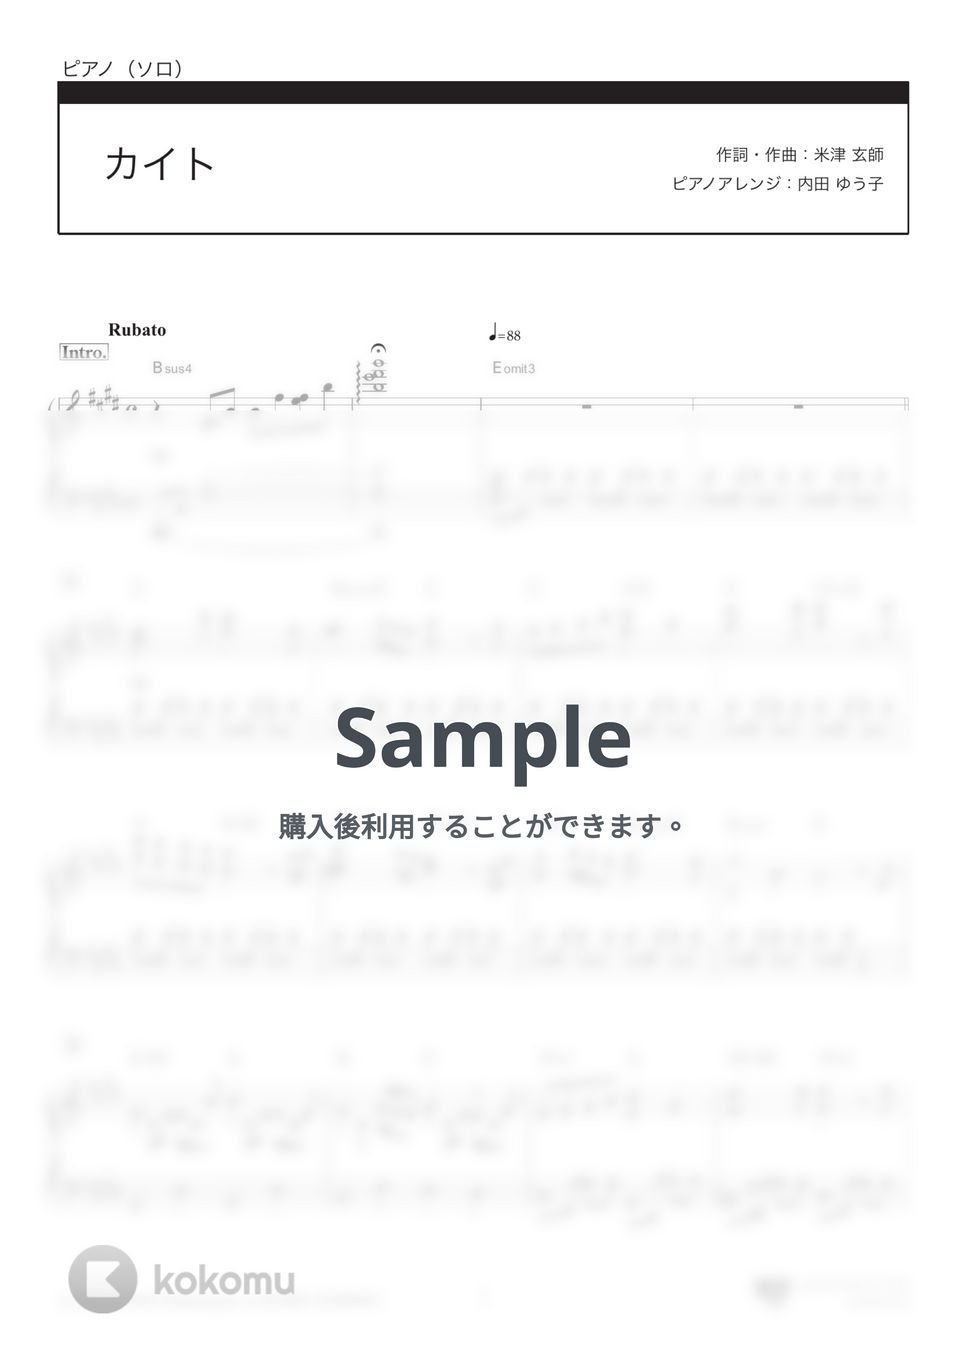 嵐 - カイト (みんなのうた放送曲,NHK2020ソング) by 楽譜仕事人_内田ゆう子